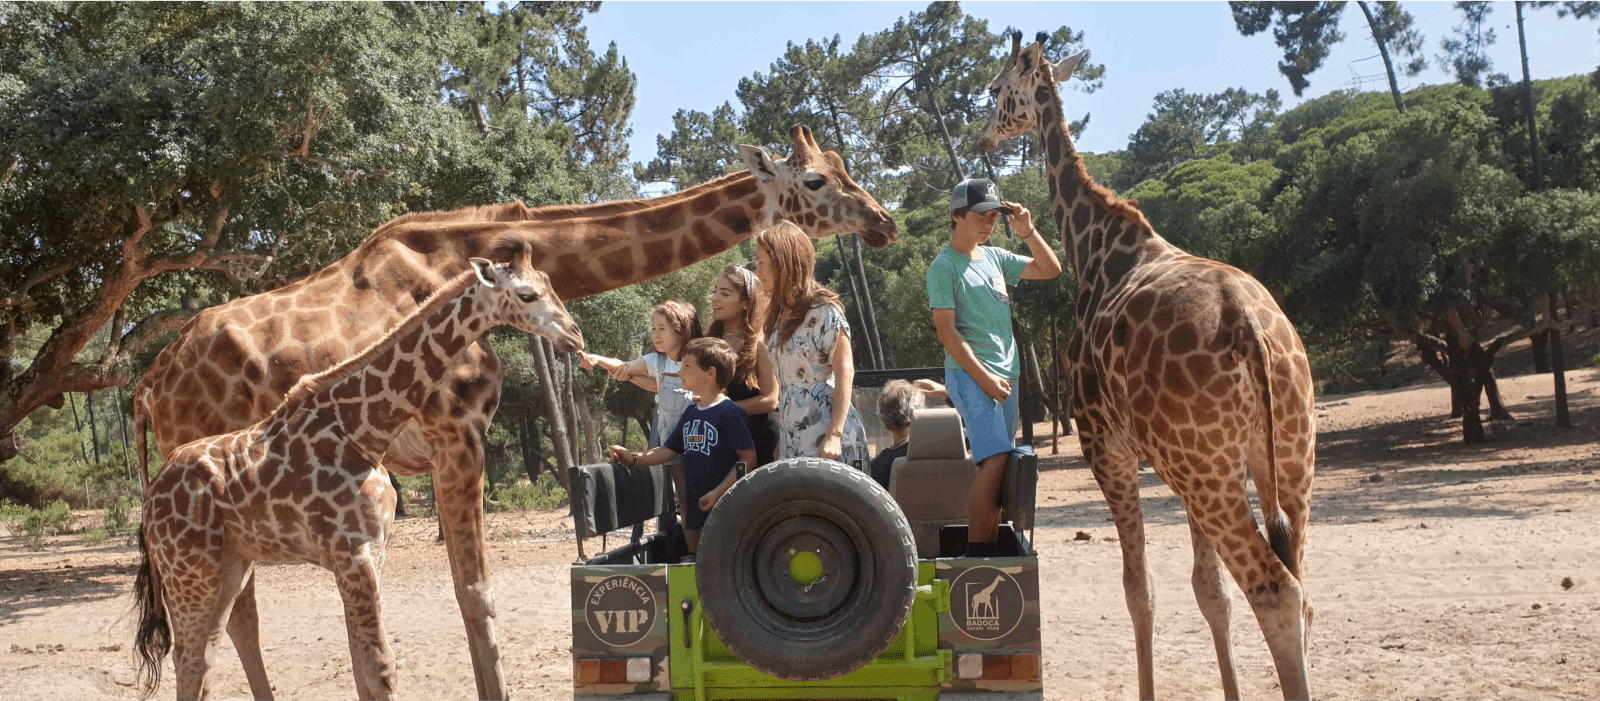 badoca safari park alentejo